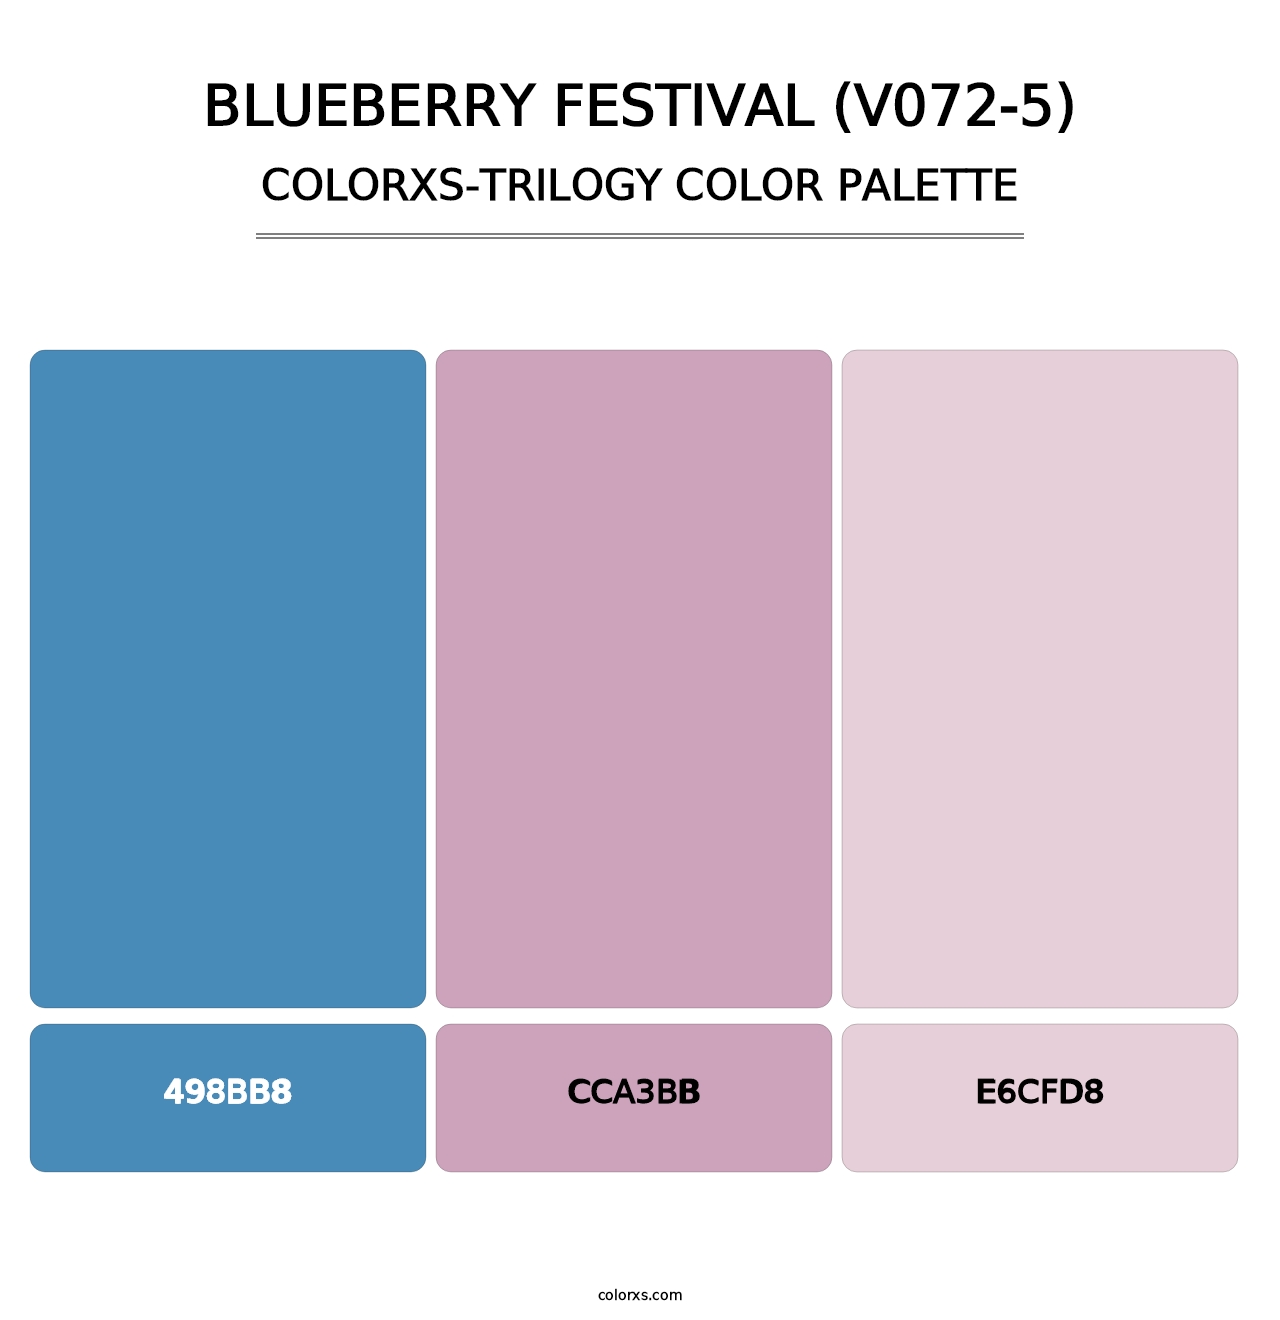 Blueberry Festival (V072-5) - Colorxs Trilogy Palette